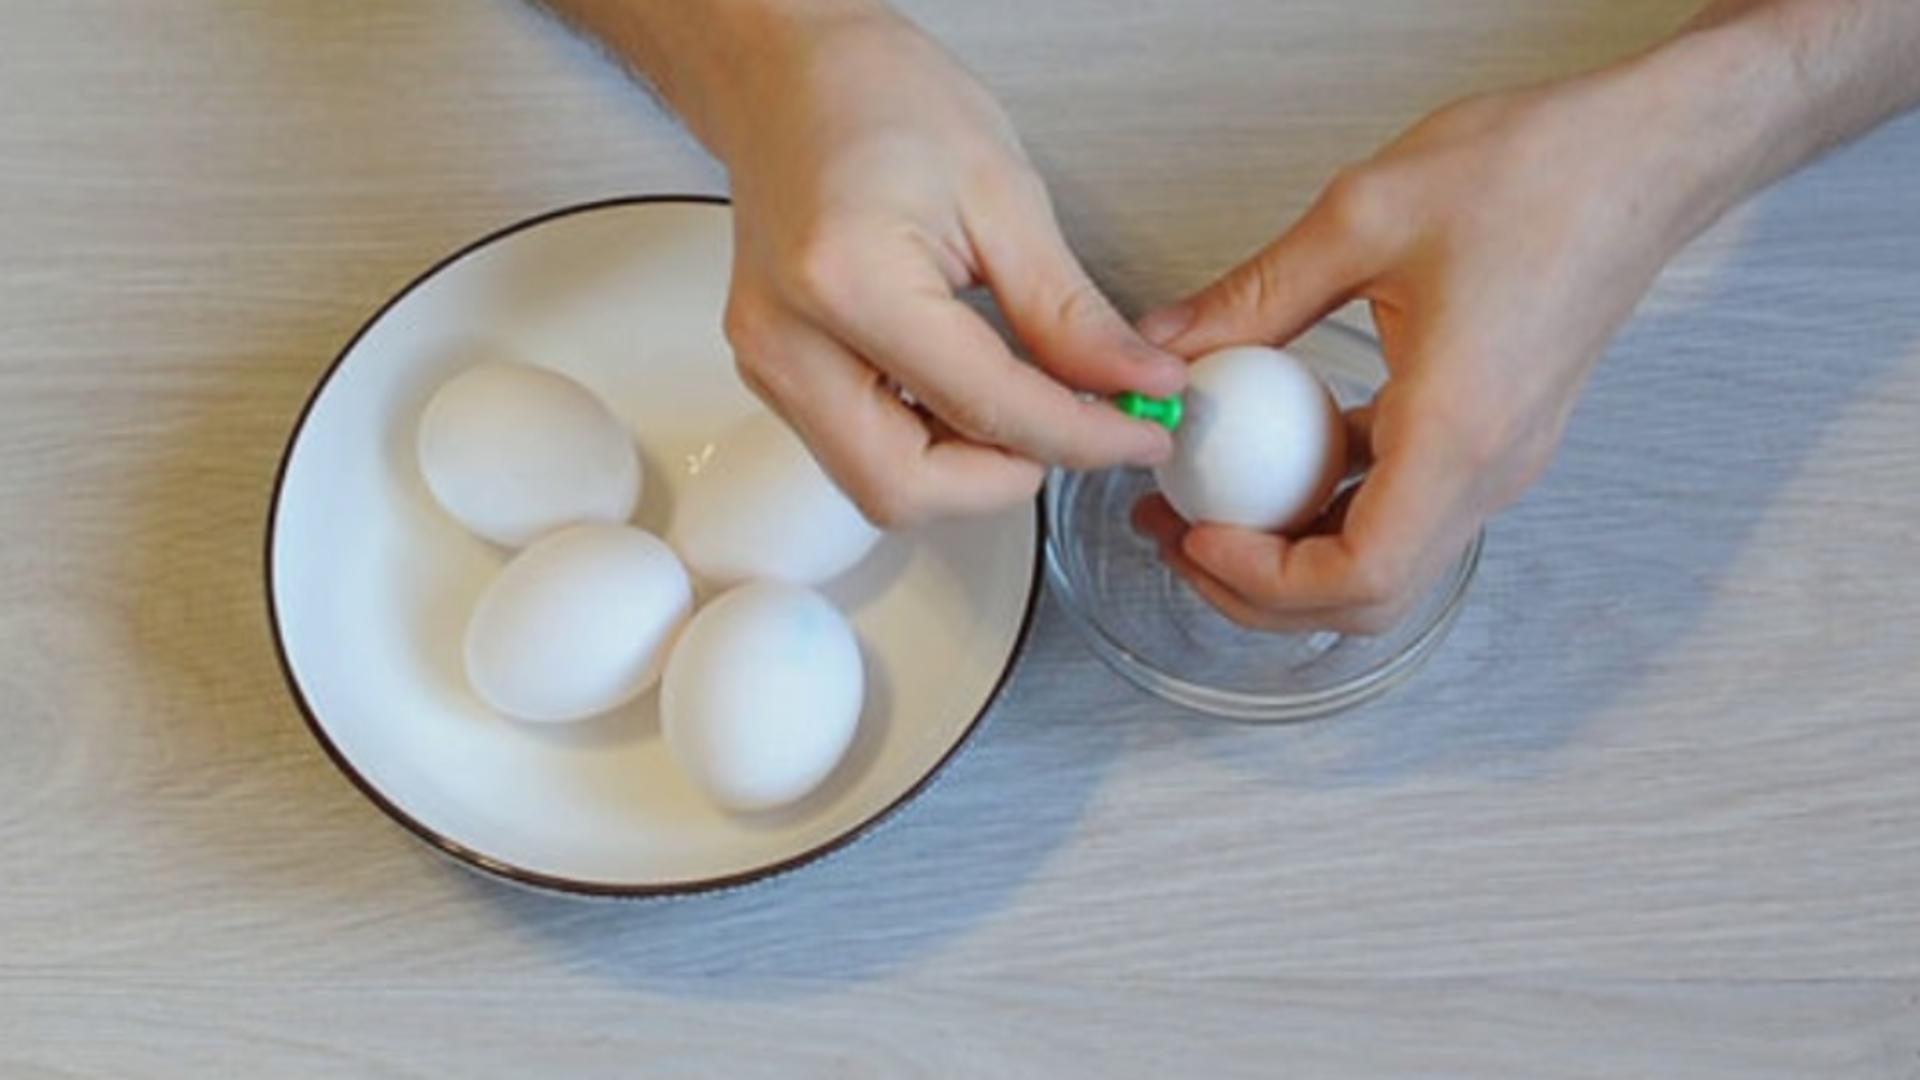 3 яйцо что делать. Подставка для яйца всмятку. В какую воду класть яйца. Яичко всмятку. Подставка для яйца всмятку своими руками.